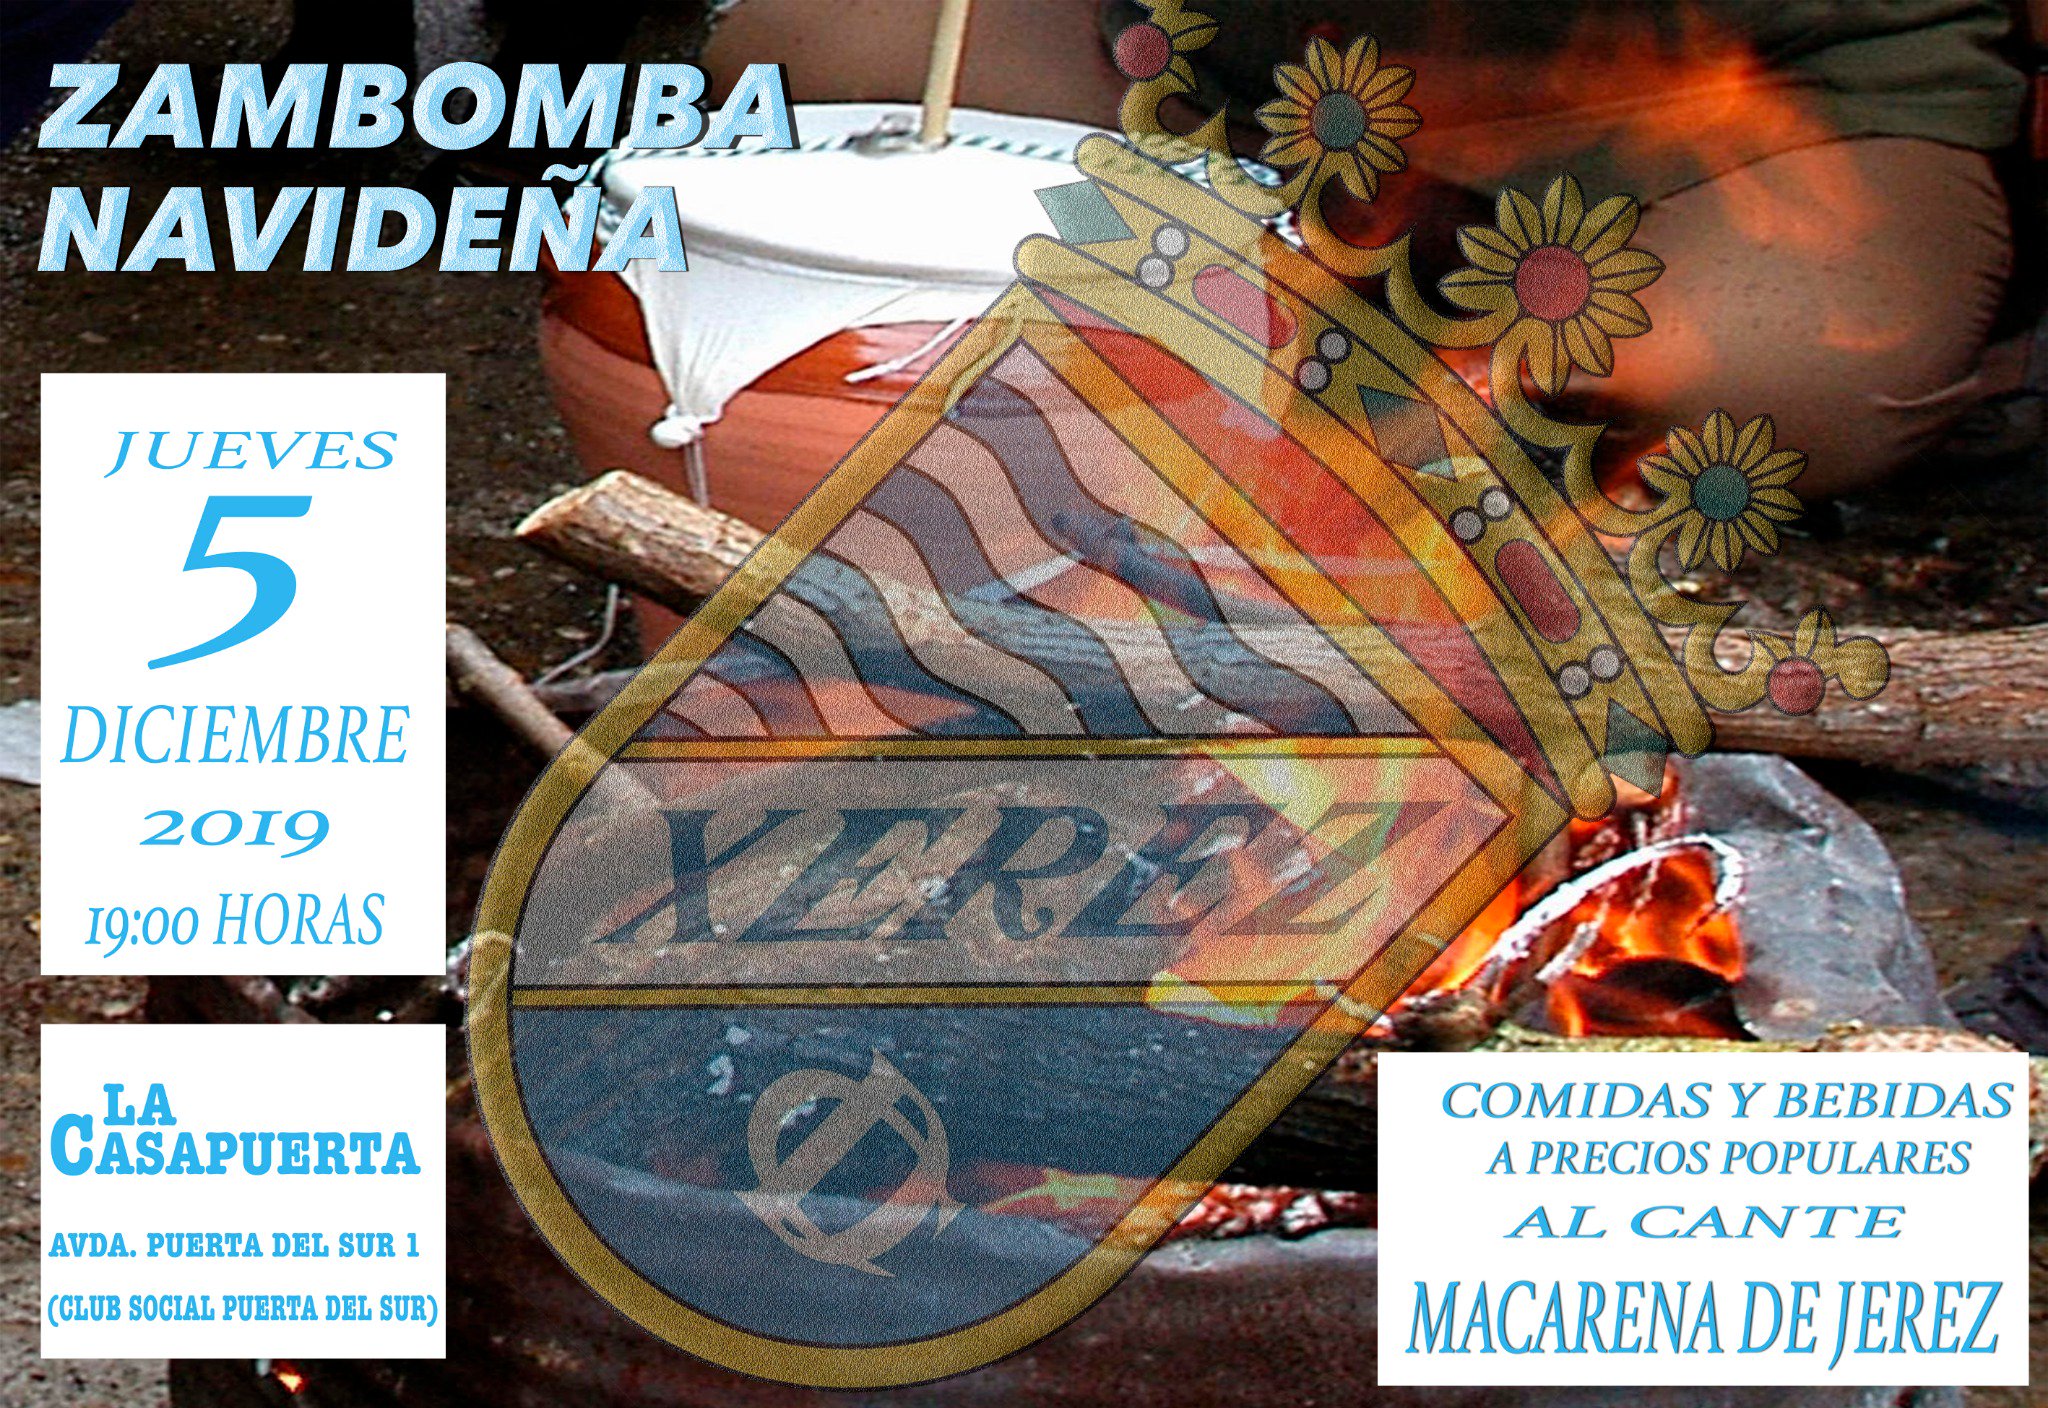 El jueves 5 de diciembre, a partir de las 19:00h. en el Bar La Casapuerta, se celebrará la I Zambomba Xerez CD que contará con la Macarena de Jerez.